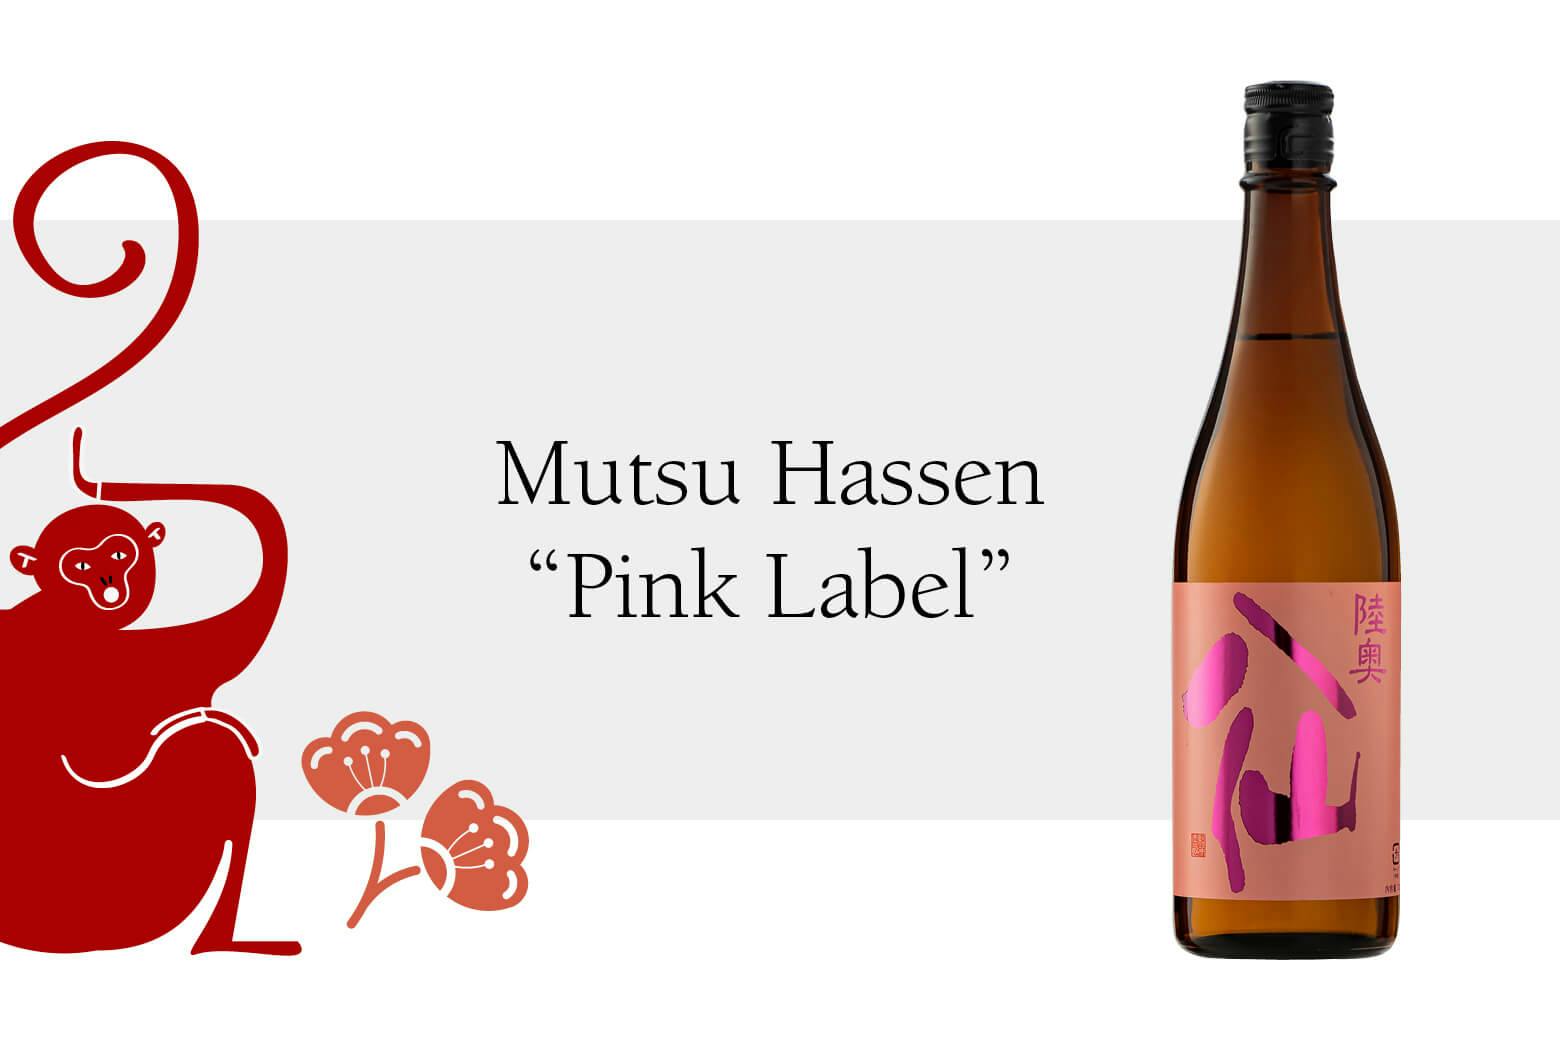 Mutsu Hassen “Pink Label” with Chinese zodiac Monkey